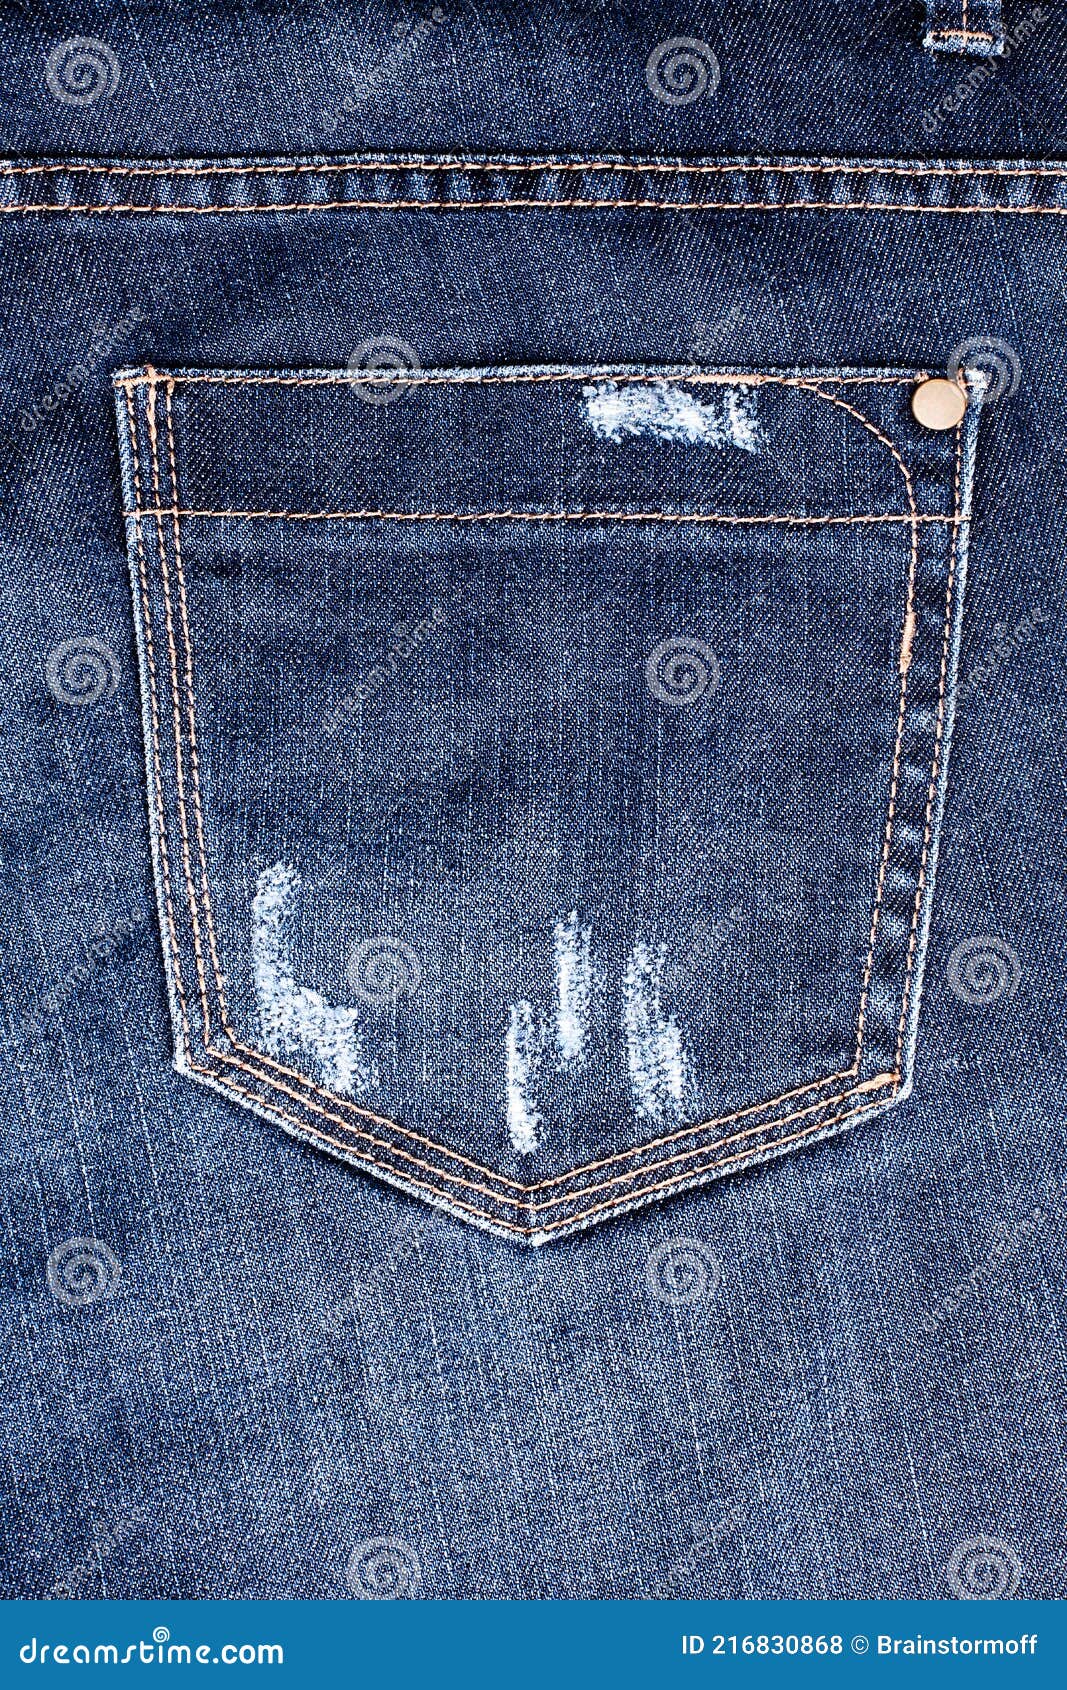 royal wolf denim jeans manufacturer skinny| Alibaba.com